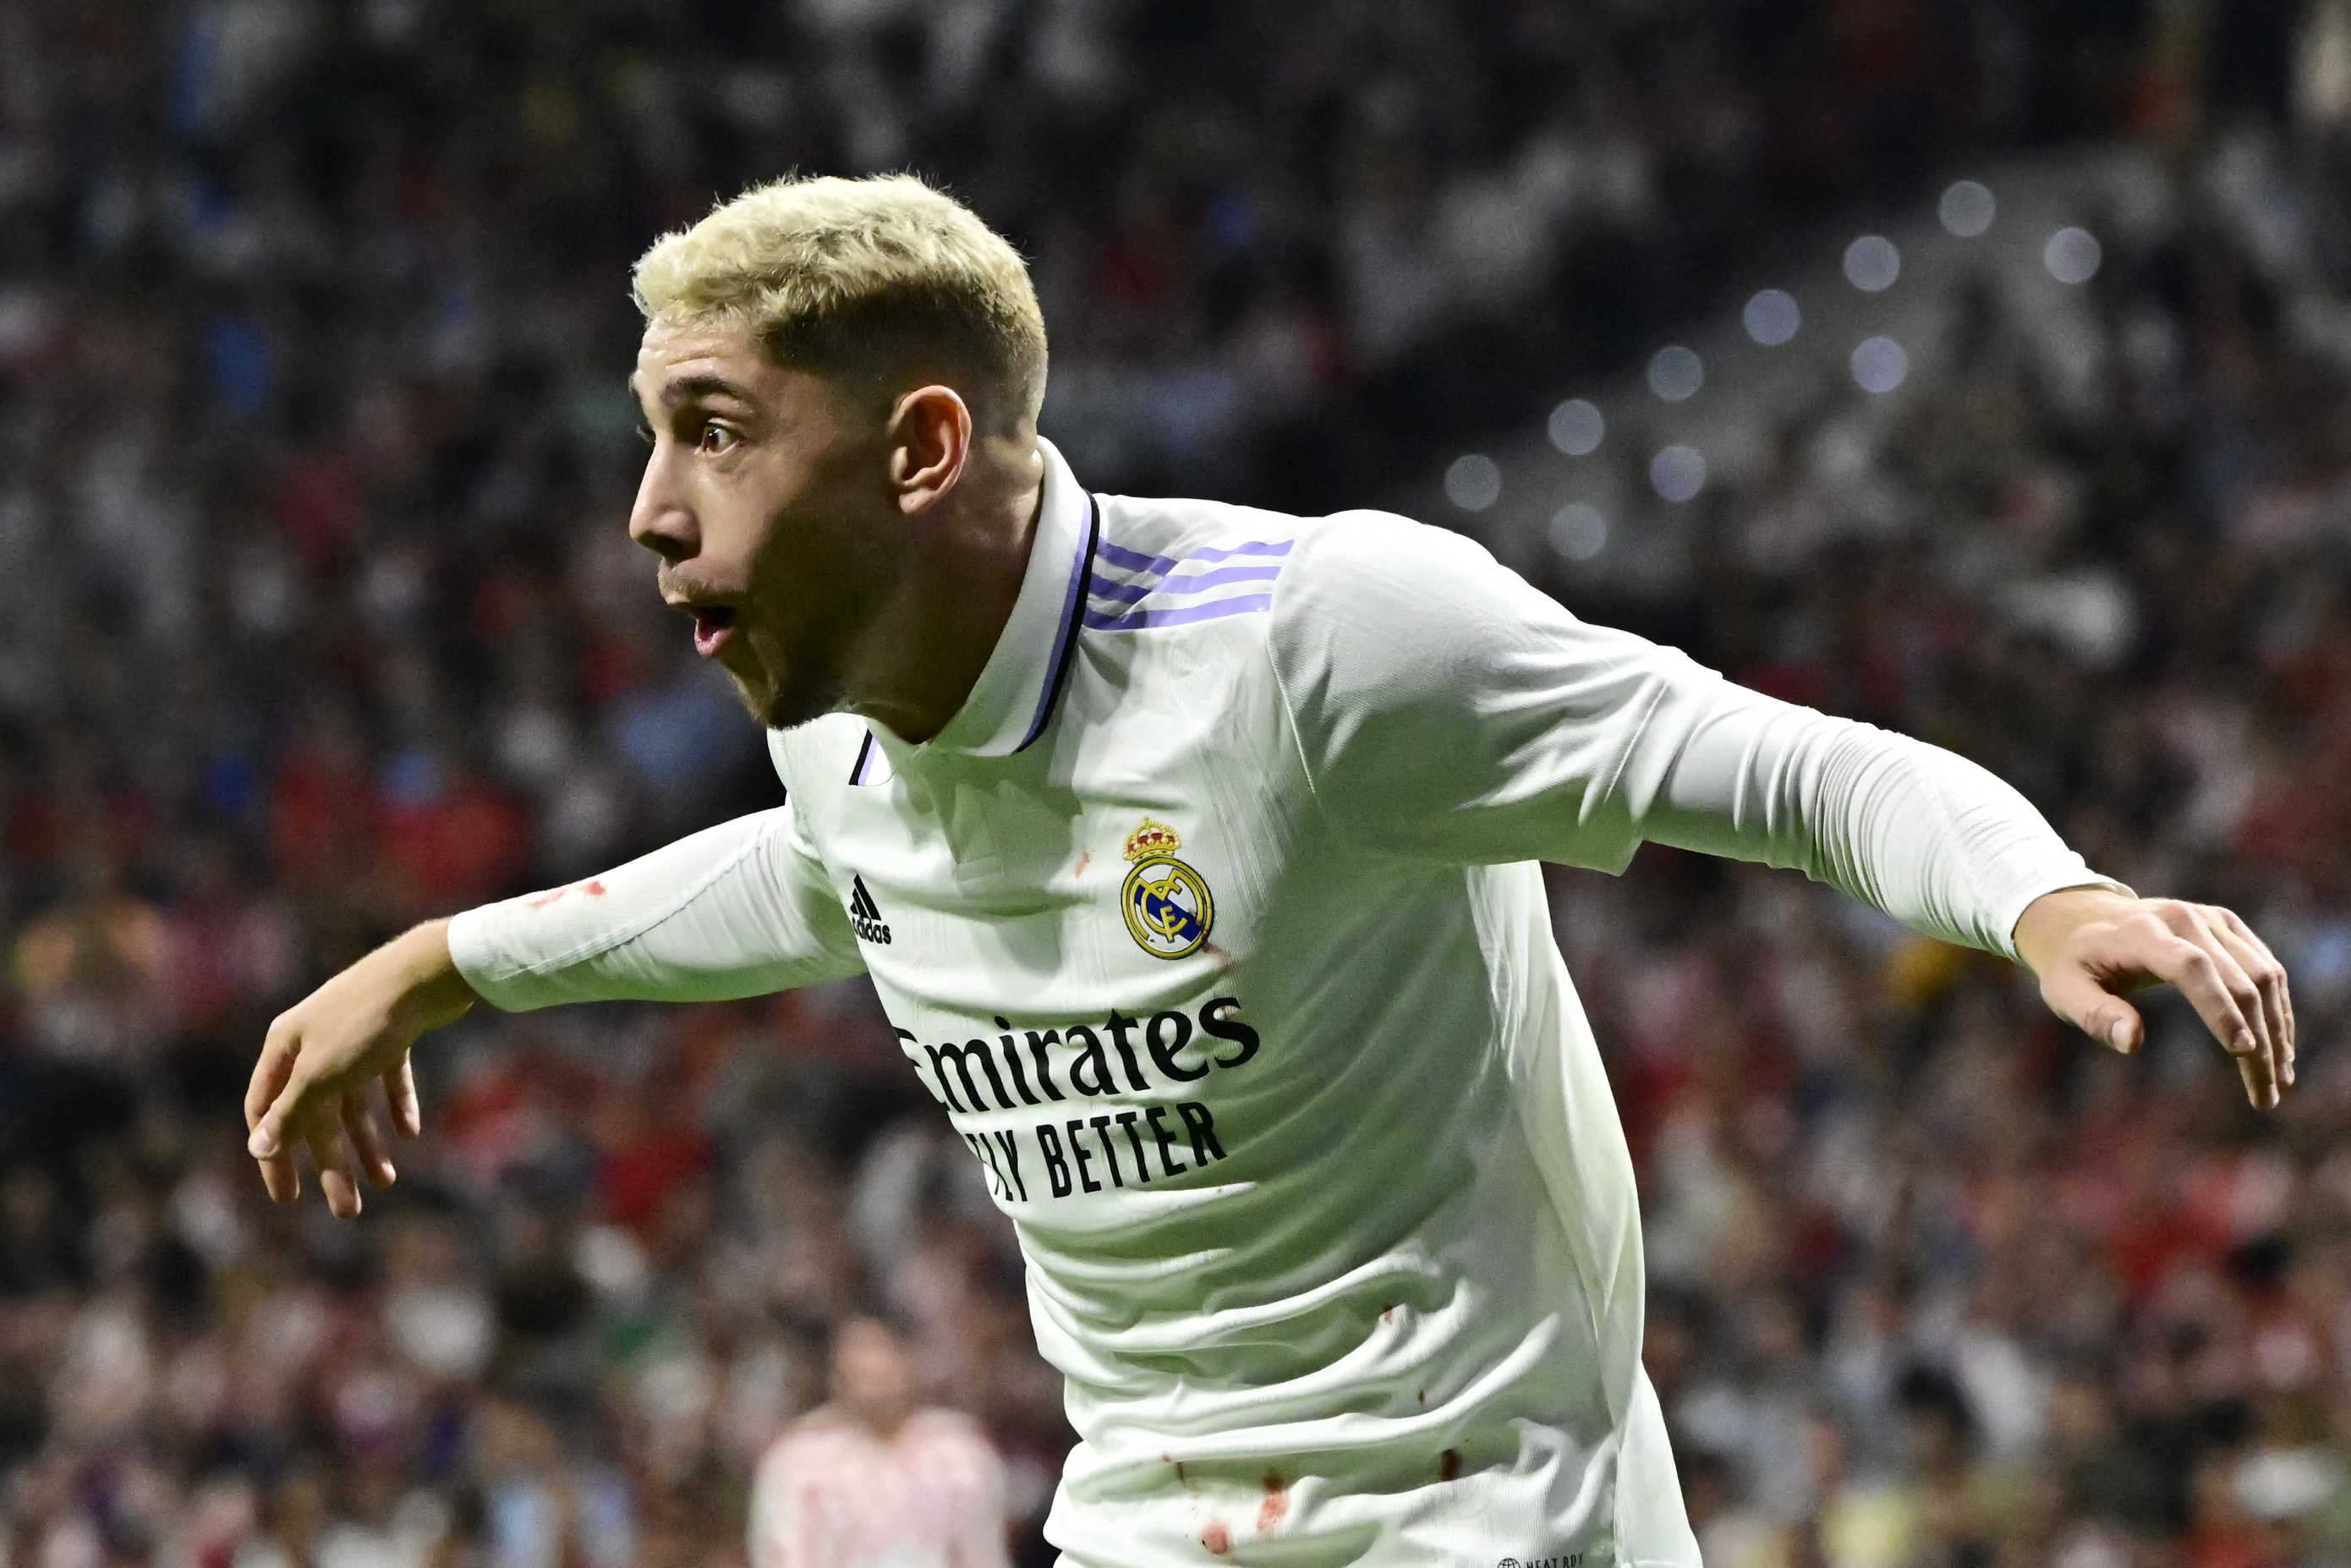 "El Pajarito" Valverde se convirtió en un "Halcón" y ahora es uno de los jugadores más desequilibrantes del Real Madrid. (Foto Prensa Libre: AFP)